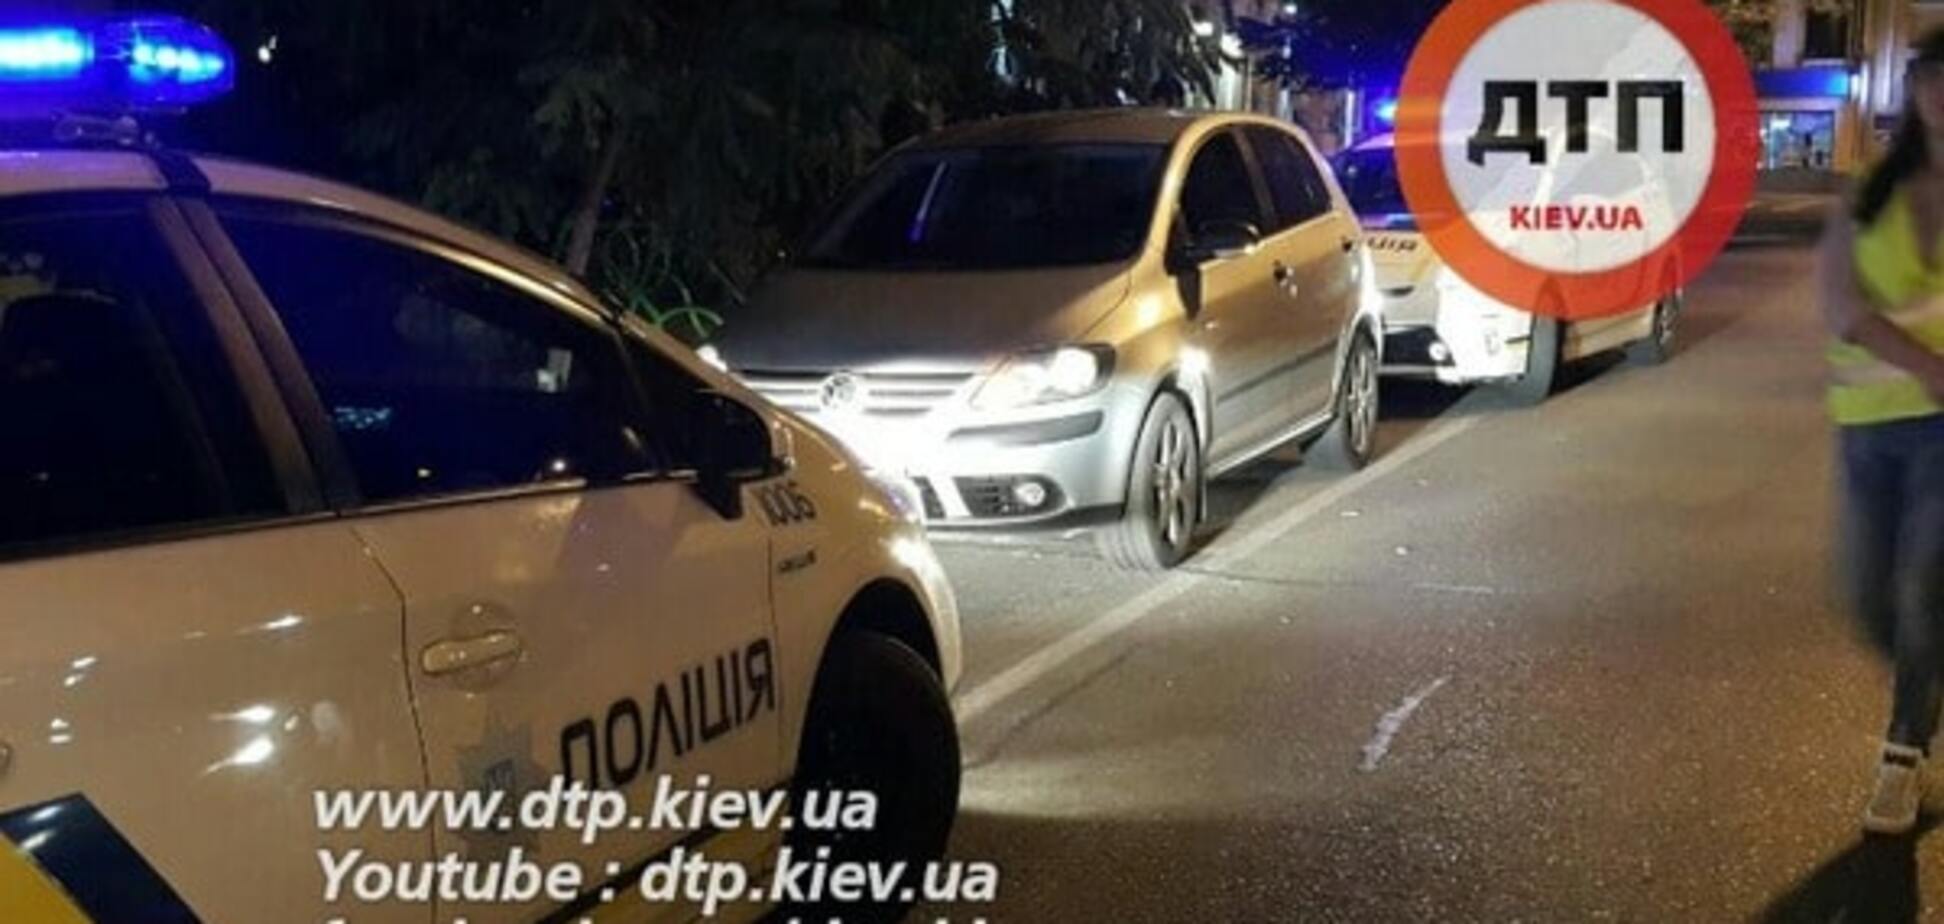 Устроили скандал: в центре Киева водитель выехал 'в лоб' патрульному авто. Опубликованы фото